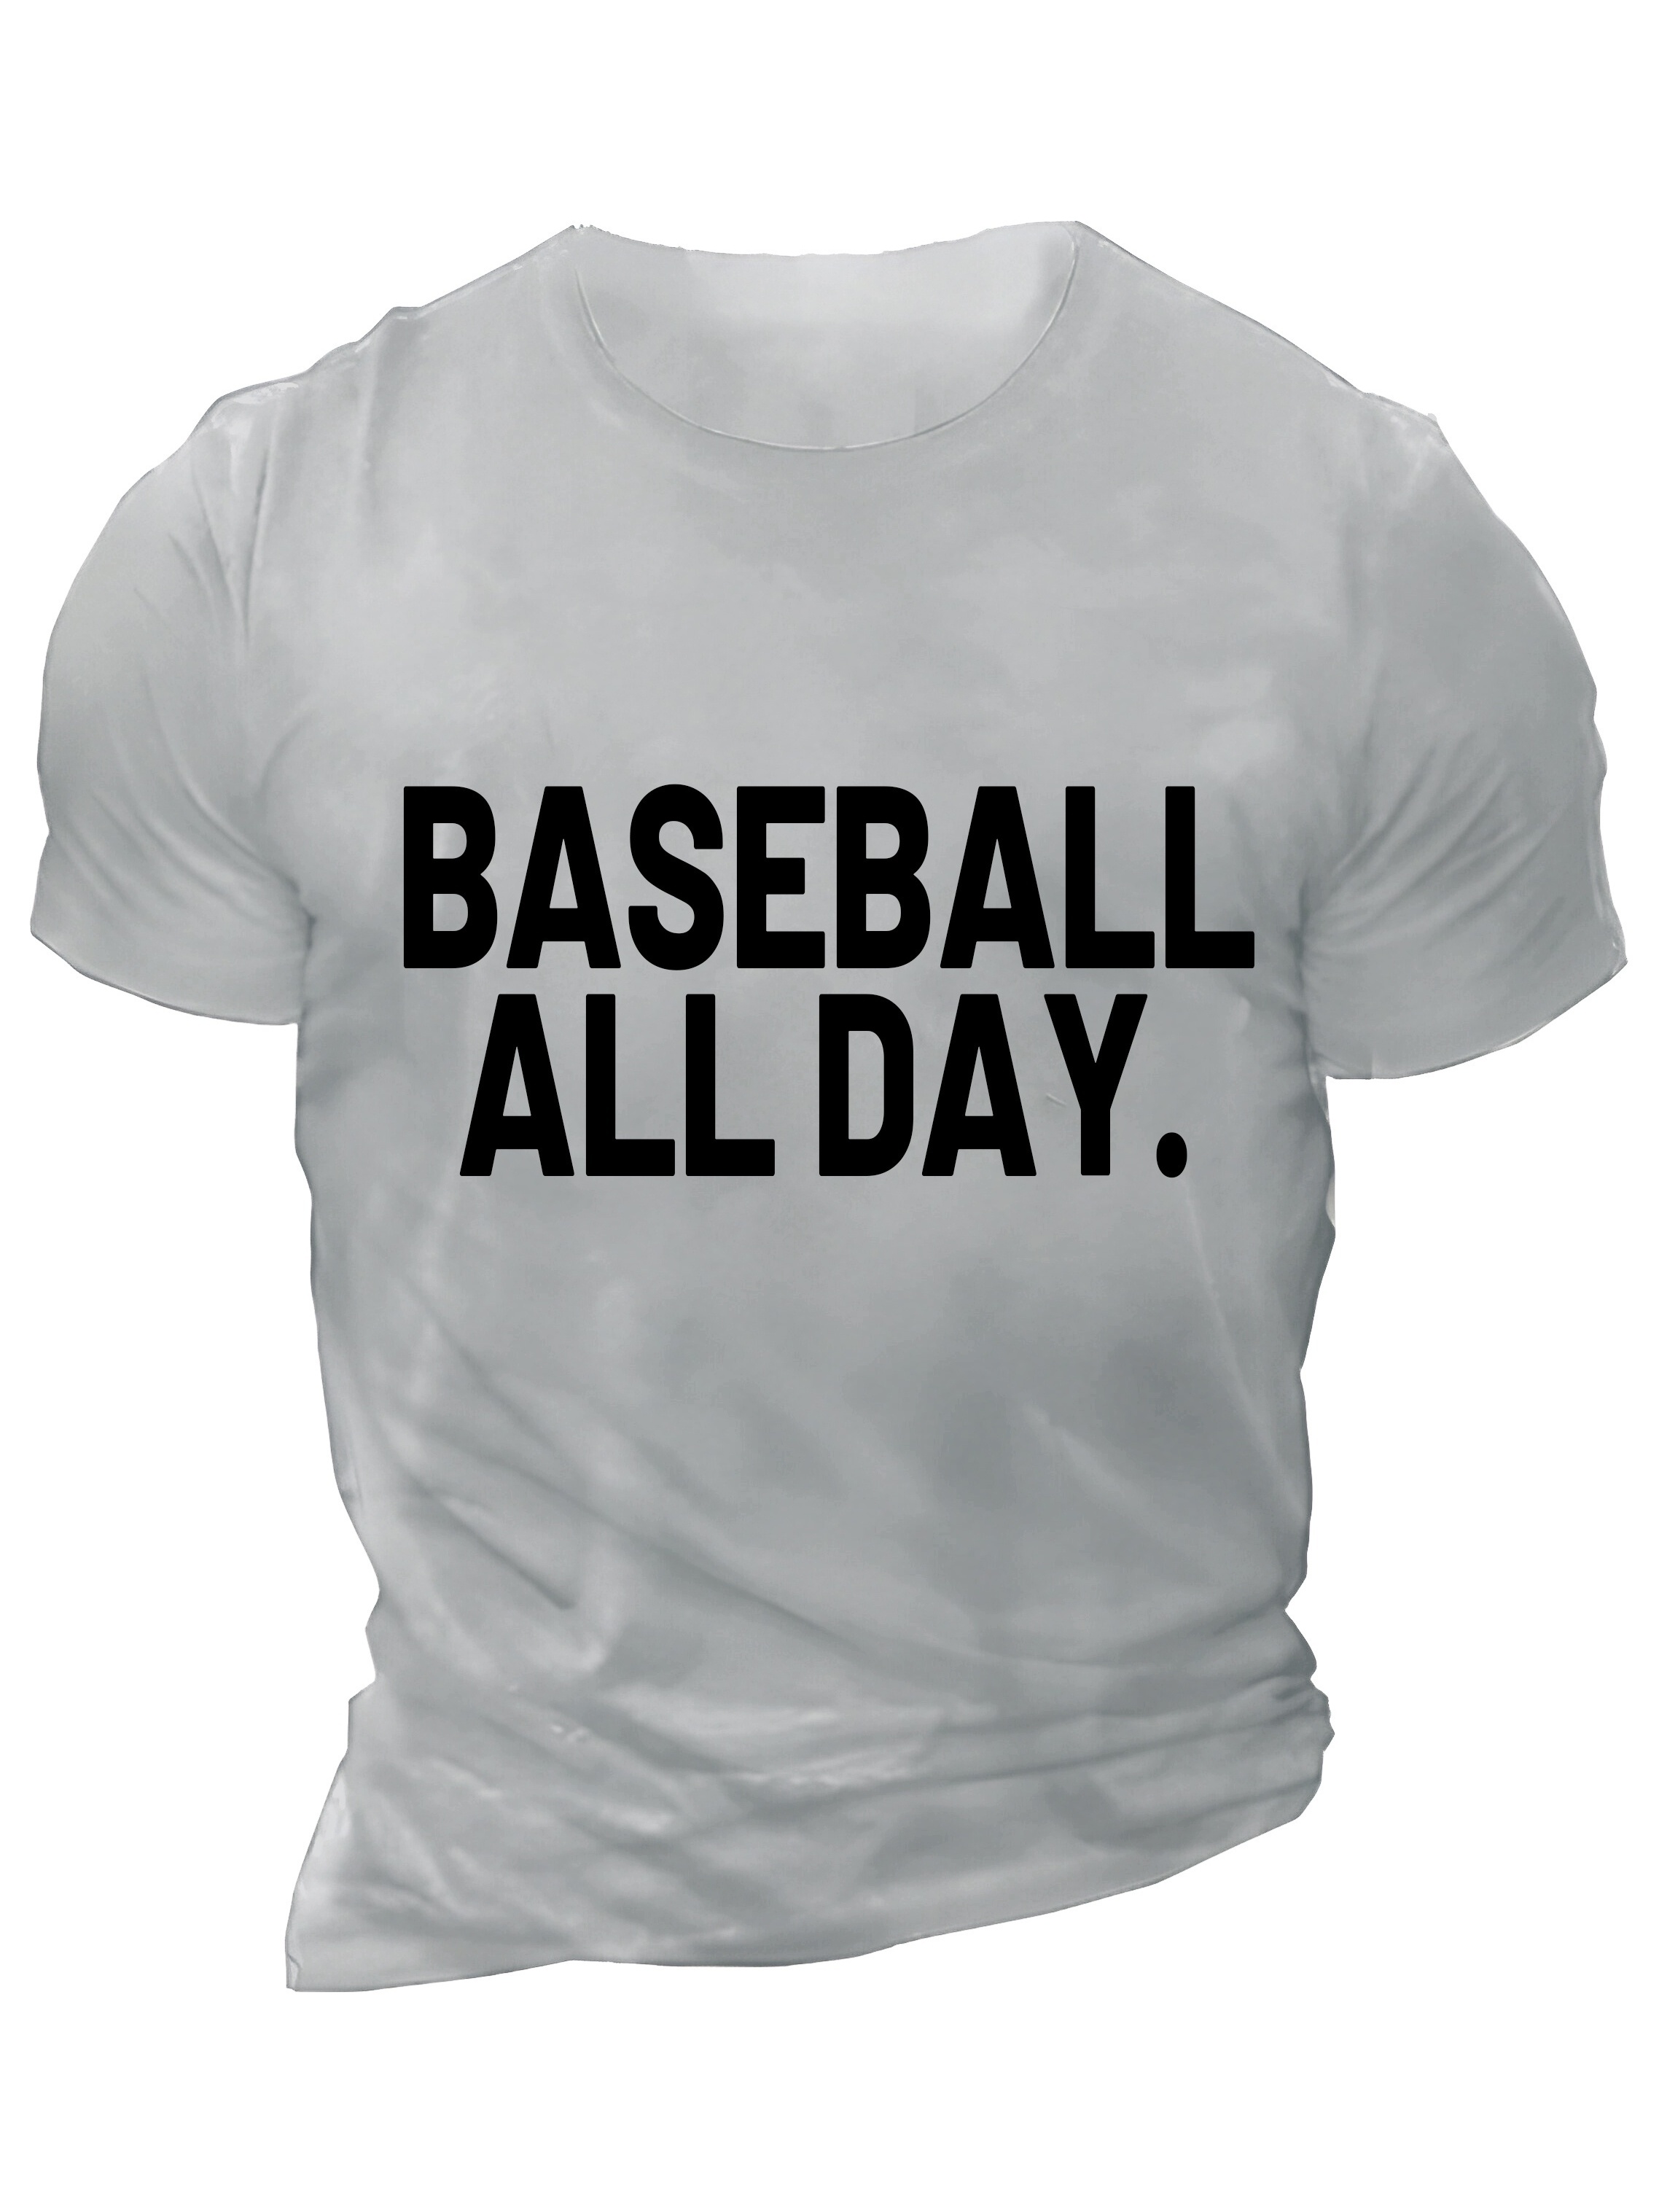 Baseball Graphic T-Shirts & Tees, Tops, Clothes